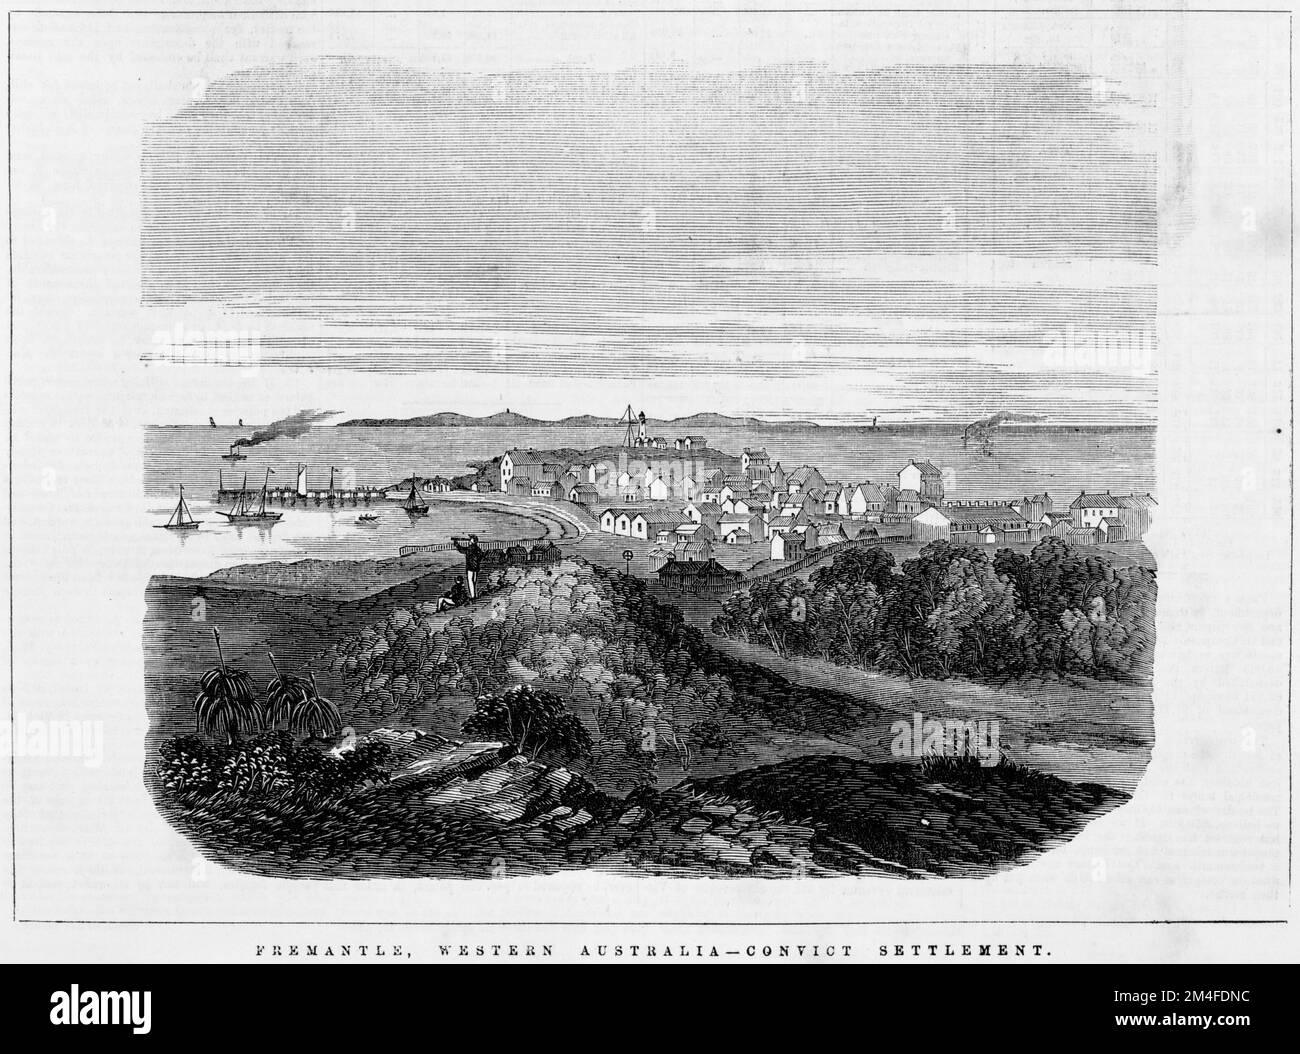 Fremantle, Australie occidentale - colonie pénitentiaire. 1863. Banque D'Images